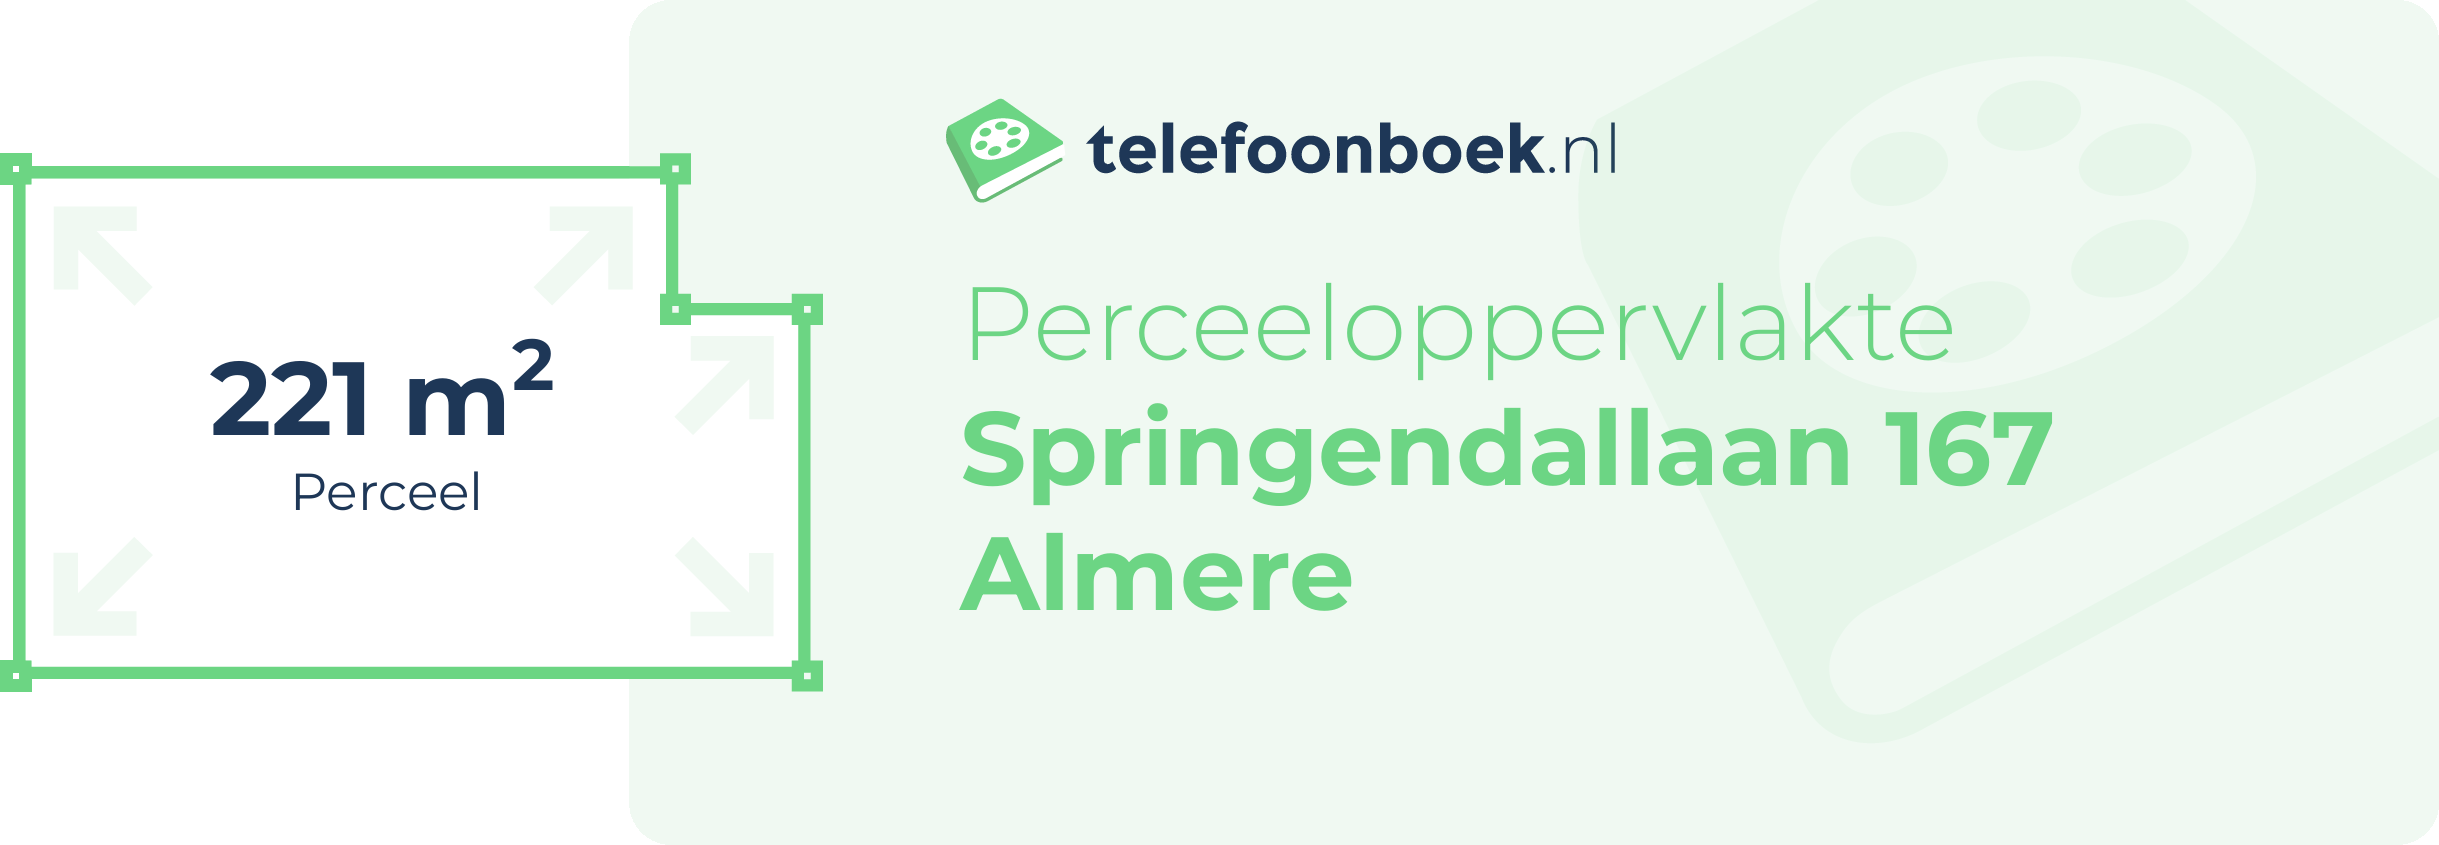 Perceeloppervlakte Springendallaan 167 Almere